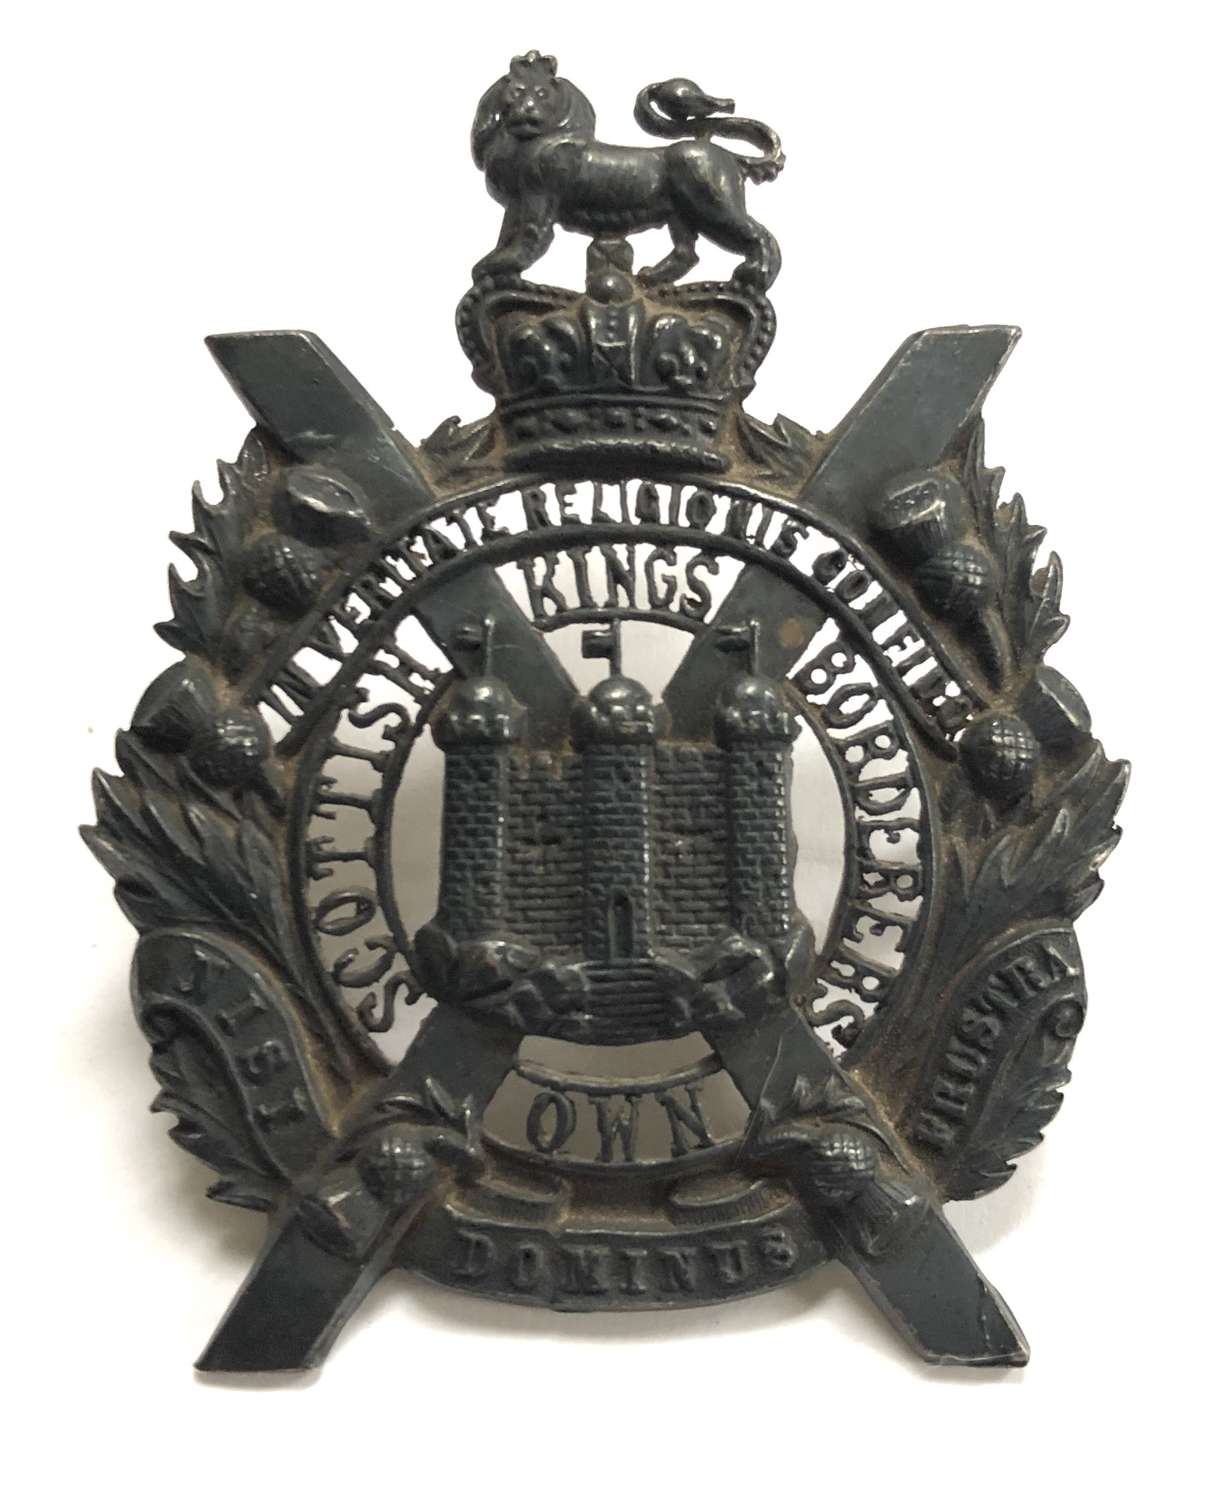 King's Own Scottish Borderers post 1953 Officer's glengarry badge